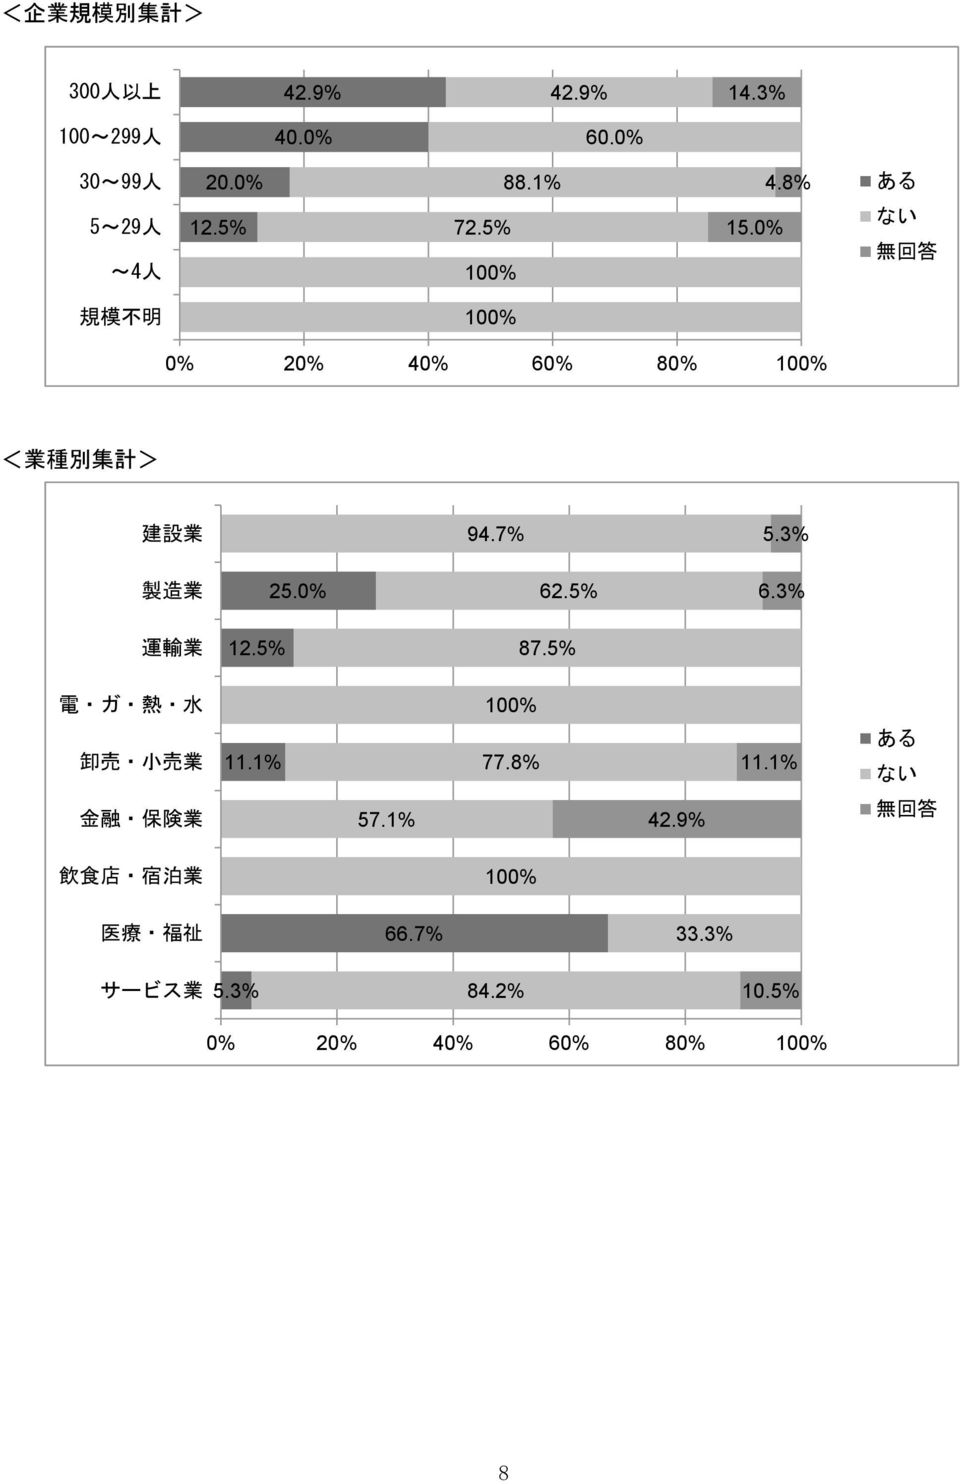 7% 5.3% 製 造 25.0% 62.5% 6.3% 運 輸 12.5% 87.5% 電 ガ 熱 水 卸 売 小 売 11.1% 77.8% 11.